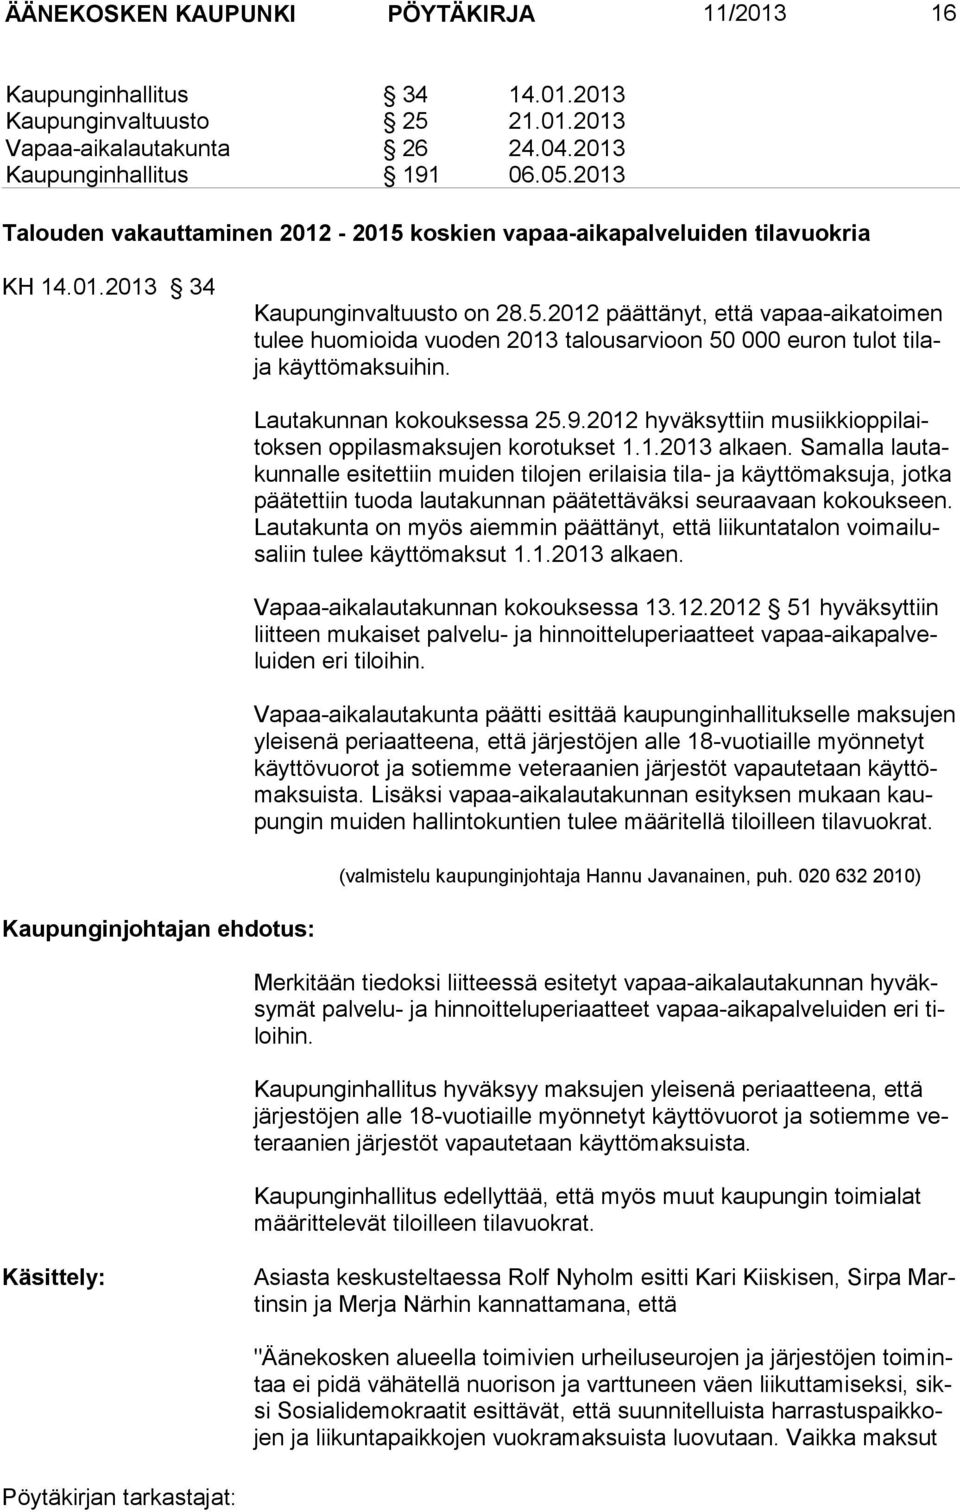 Kaupunginjohtajan ehdotus: Lautakunnan kokouksessa 25.9.2012 hyväksyttiin musiikkioppilaitoksen oppilasmaksujen korotukset 1.1.2013 alkaen.